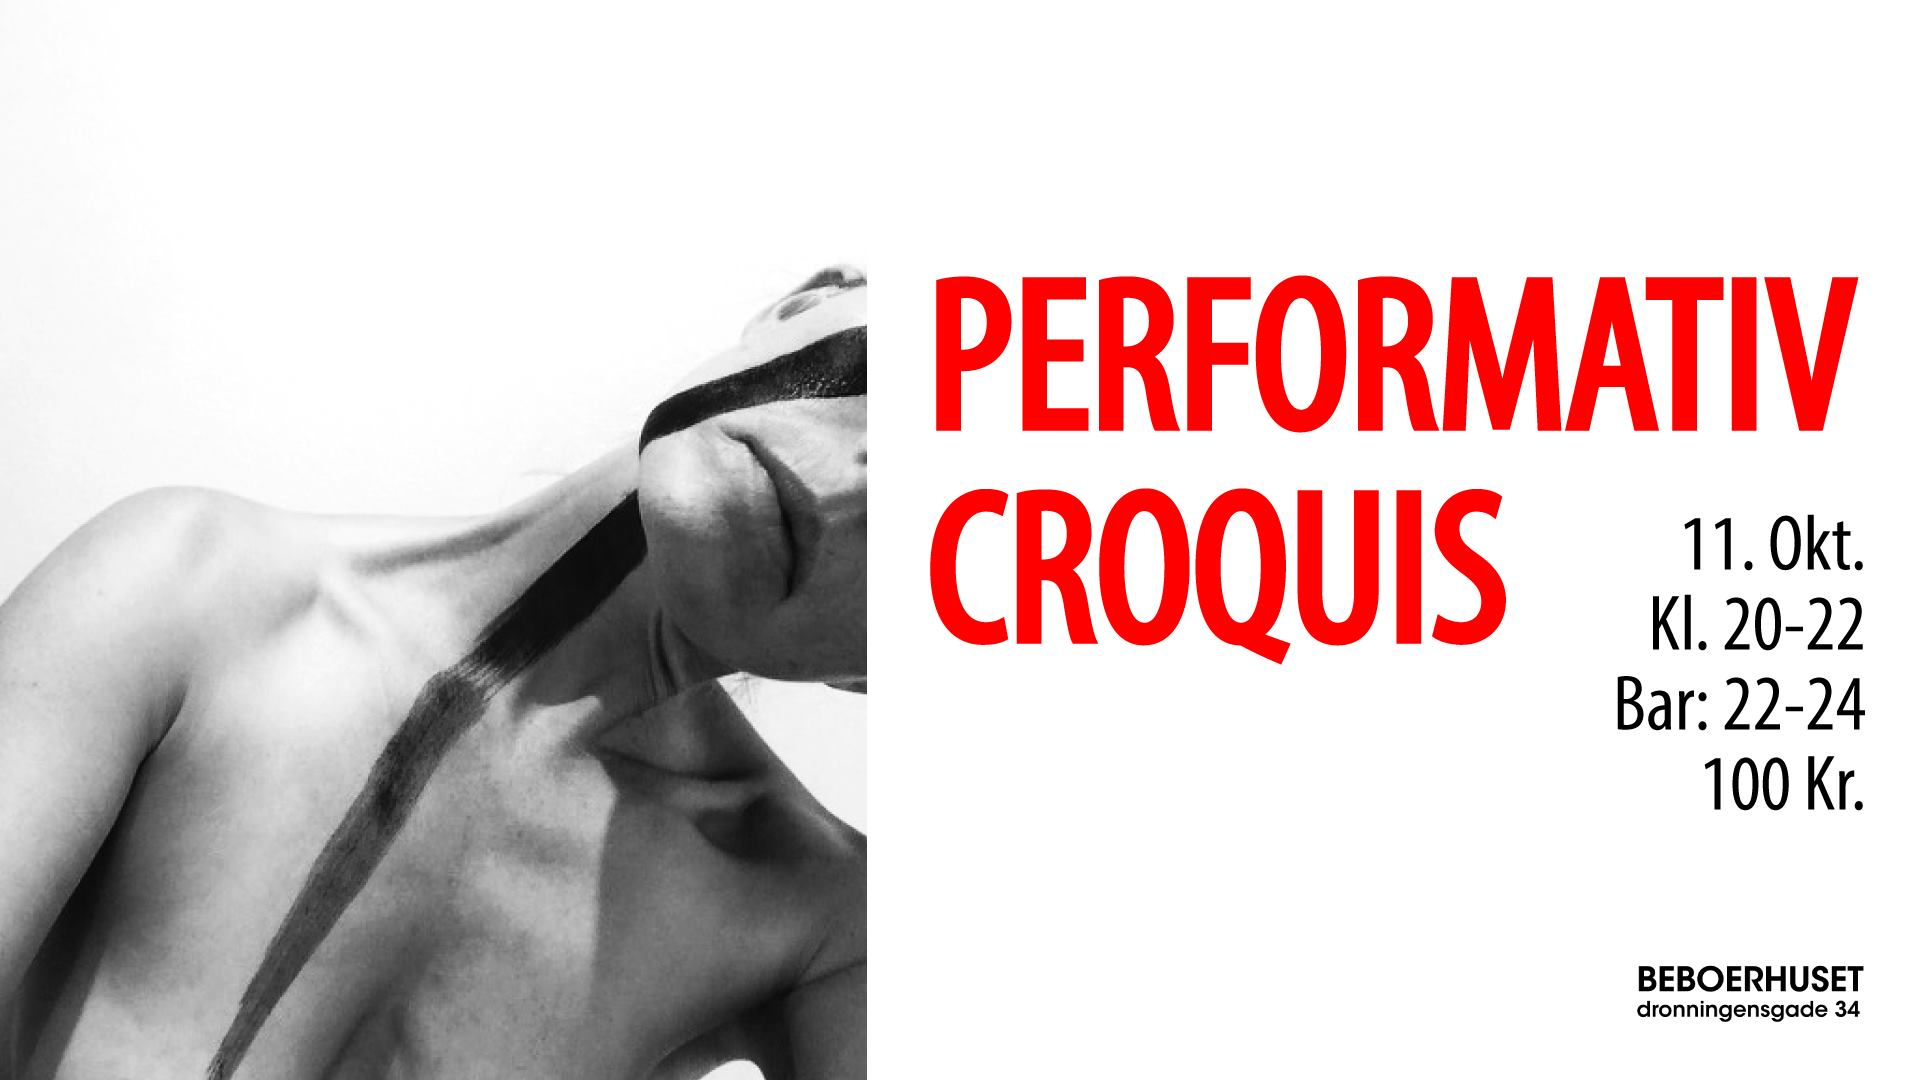 Performativ Croquis – Christianshavns Beboerhus and Shock – Kbh